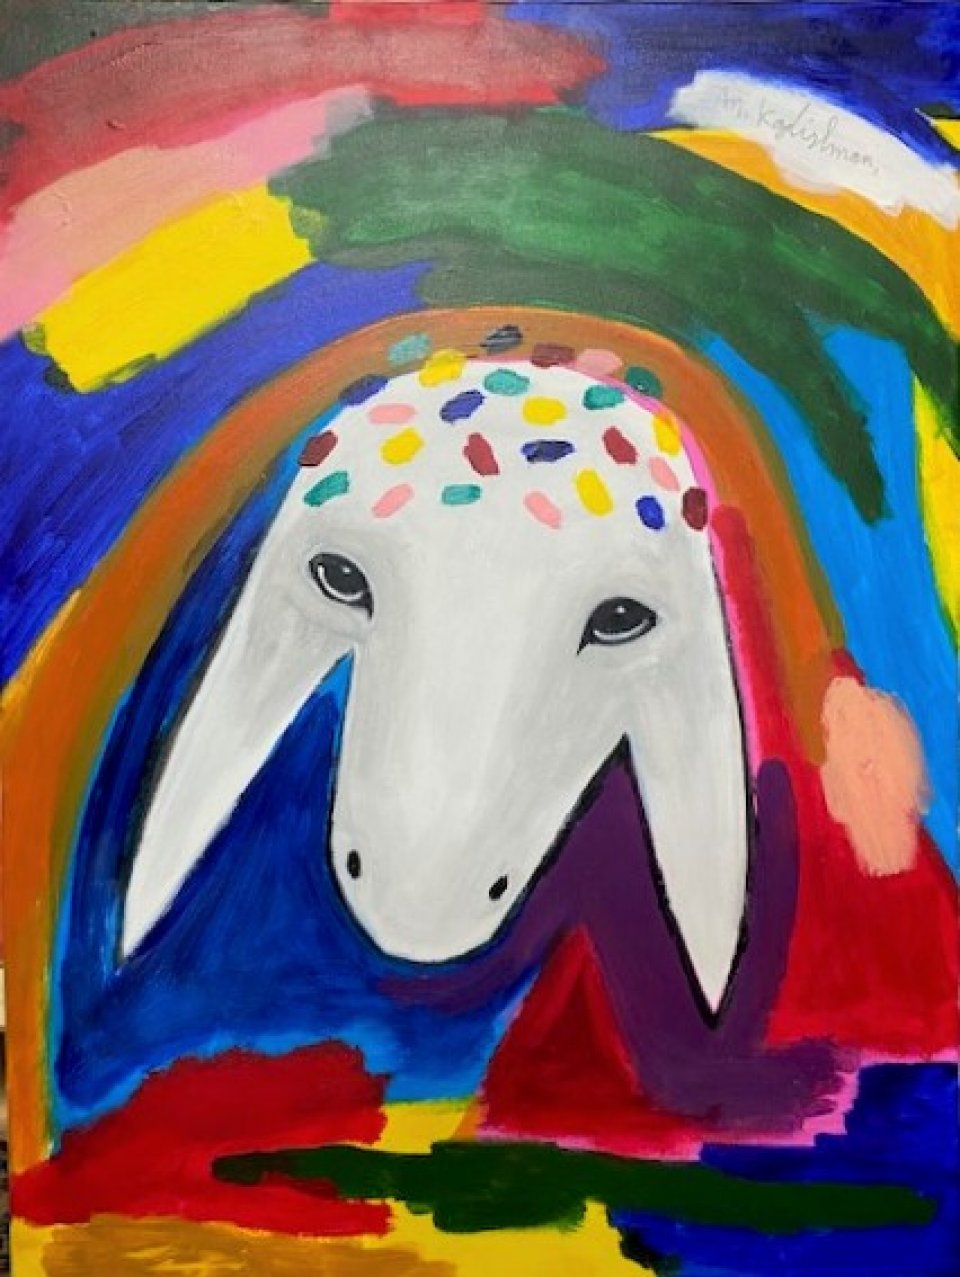 ראש כבשה על רקע צבעוני